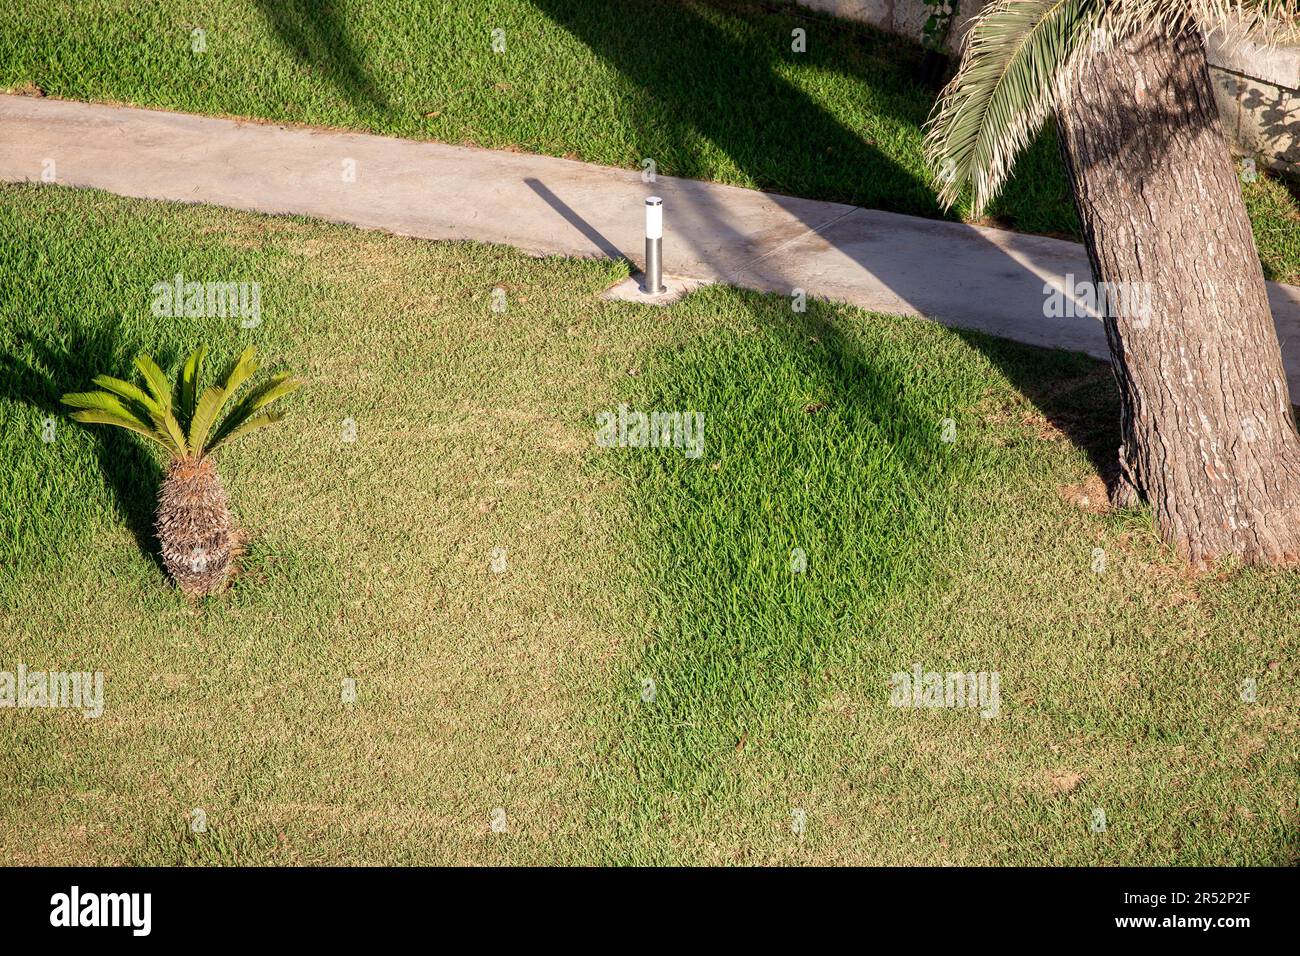 Sidewalk in the palm garden Stock Photo